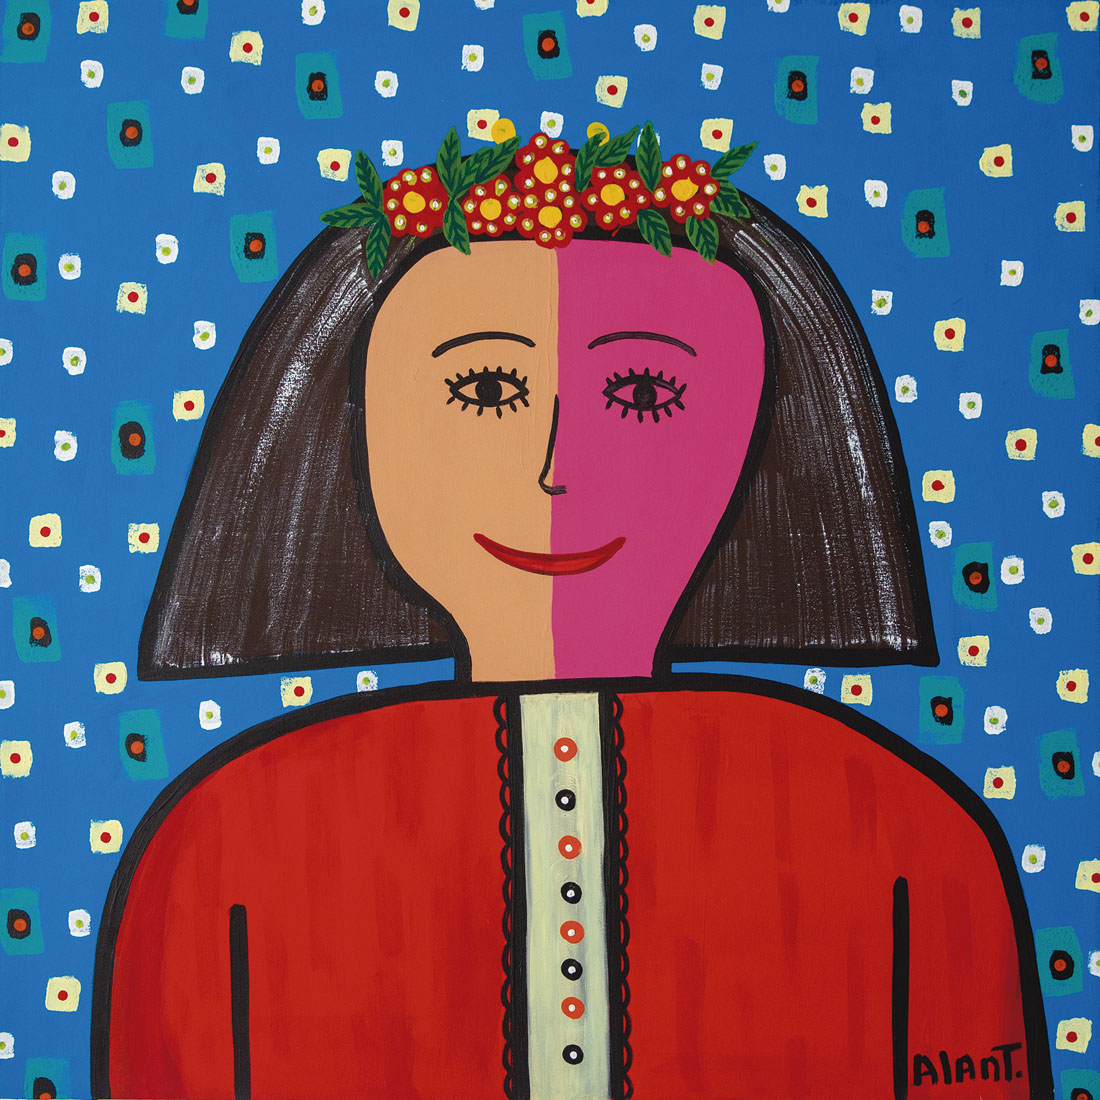 Pintura de una mujer con una diadema de flores, la cara está dividida a la mitad, de un lado tiene un color durazno y del otro uno rosa. El cabello es negro y tiene una camisa naranja con un detalle floral al centro. Al fondo una secuencia de pequeños cuadrados color azul.